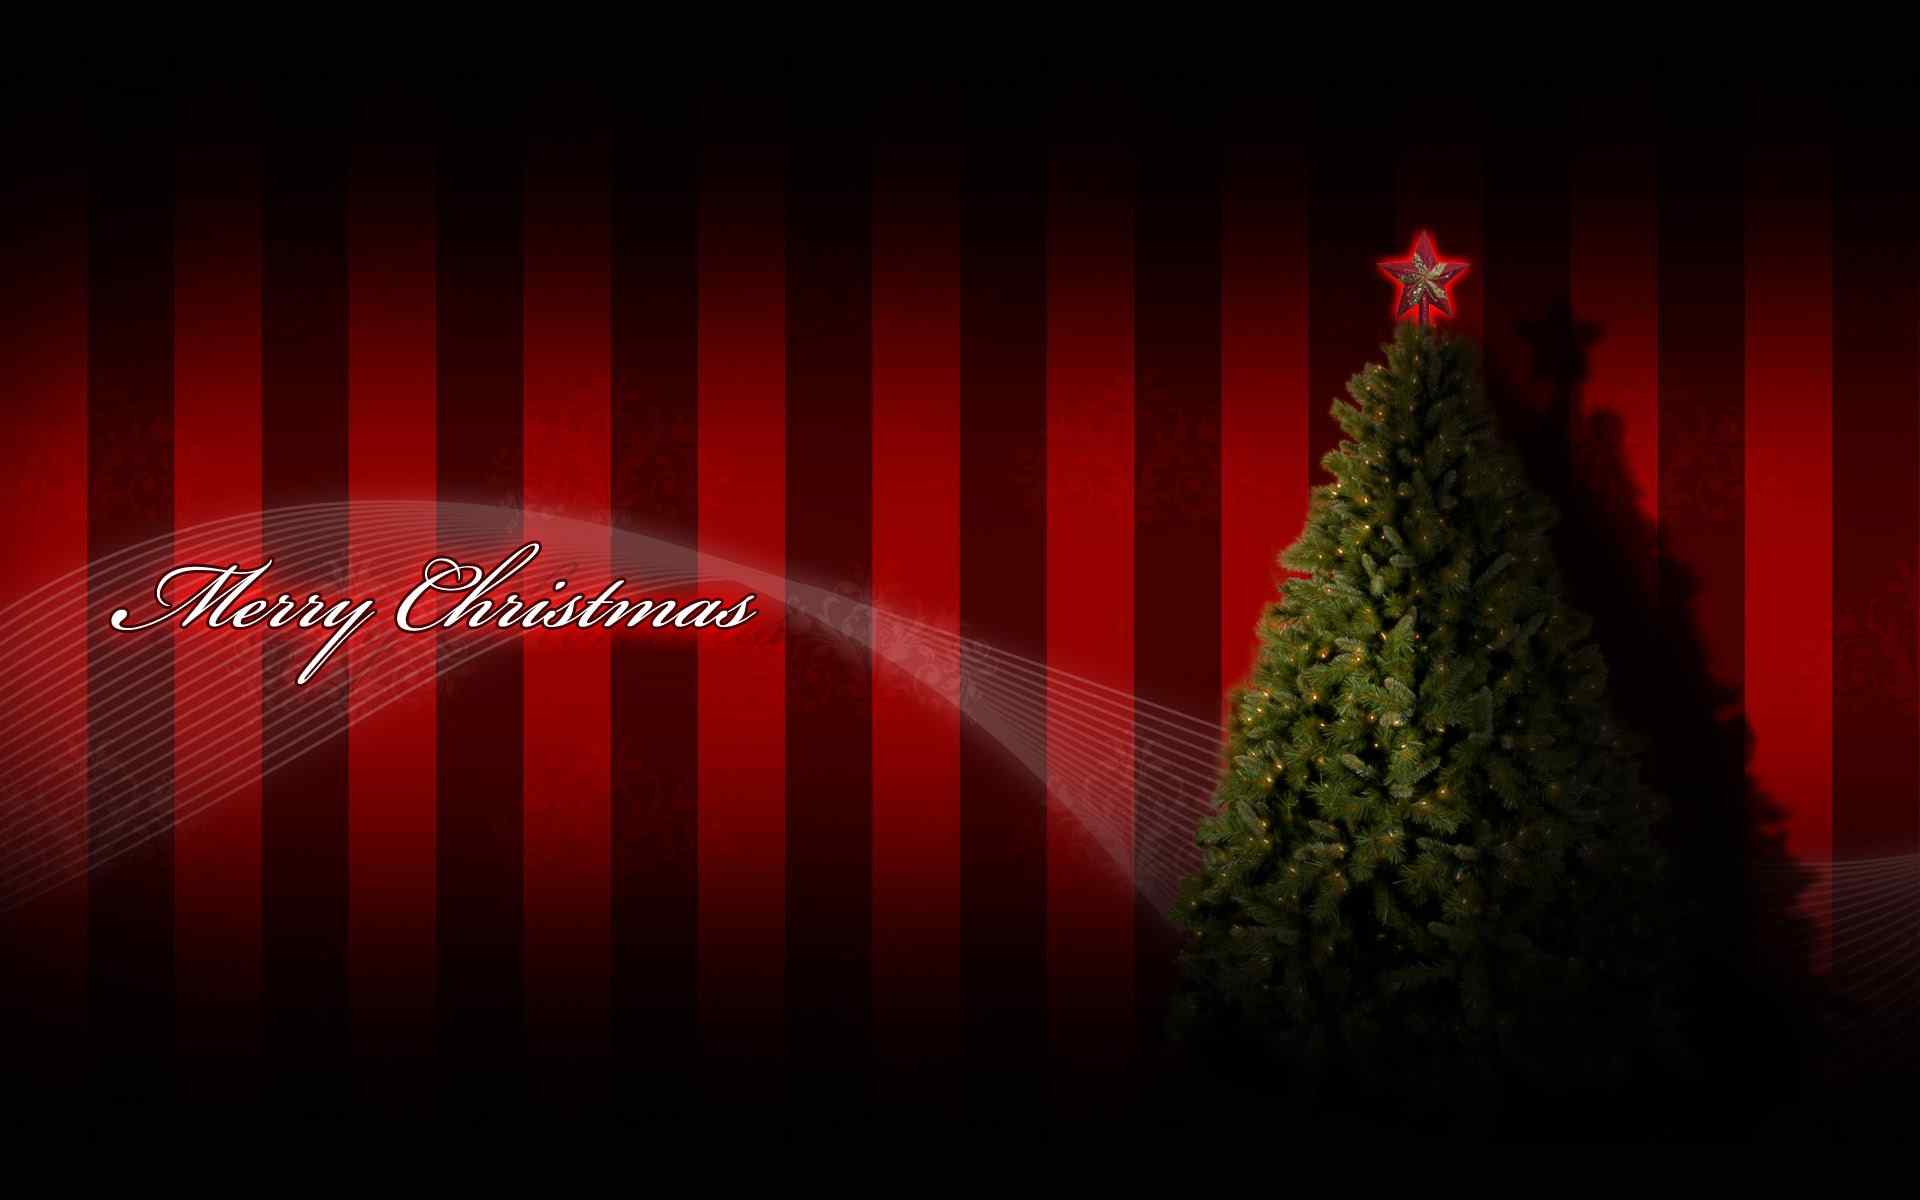 2013年圣诞节唯美好看圣诞树精美主题壁纸